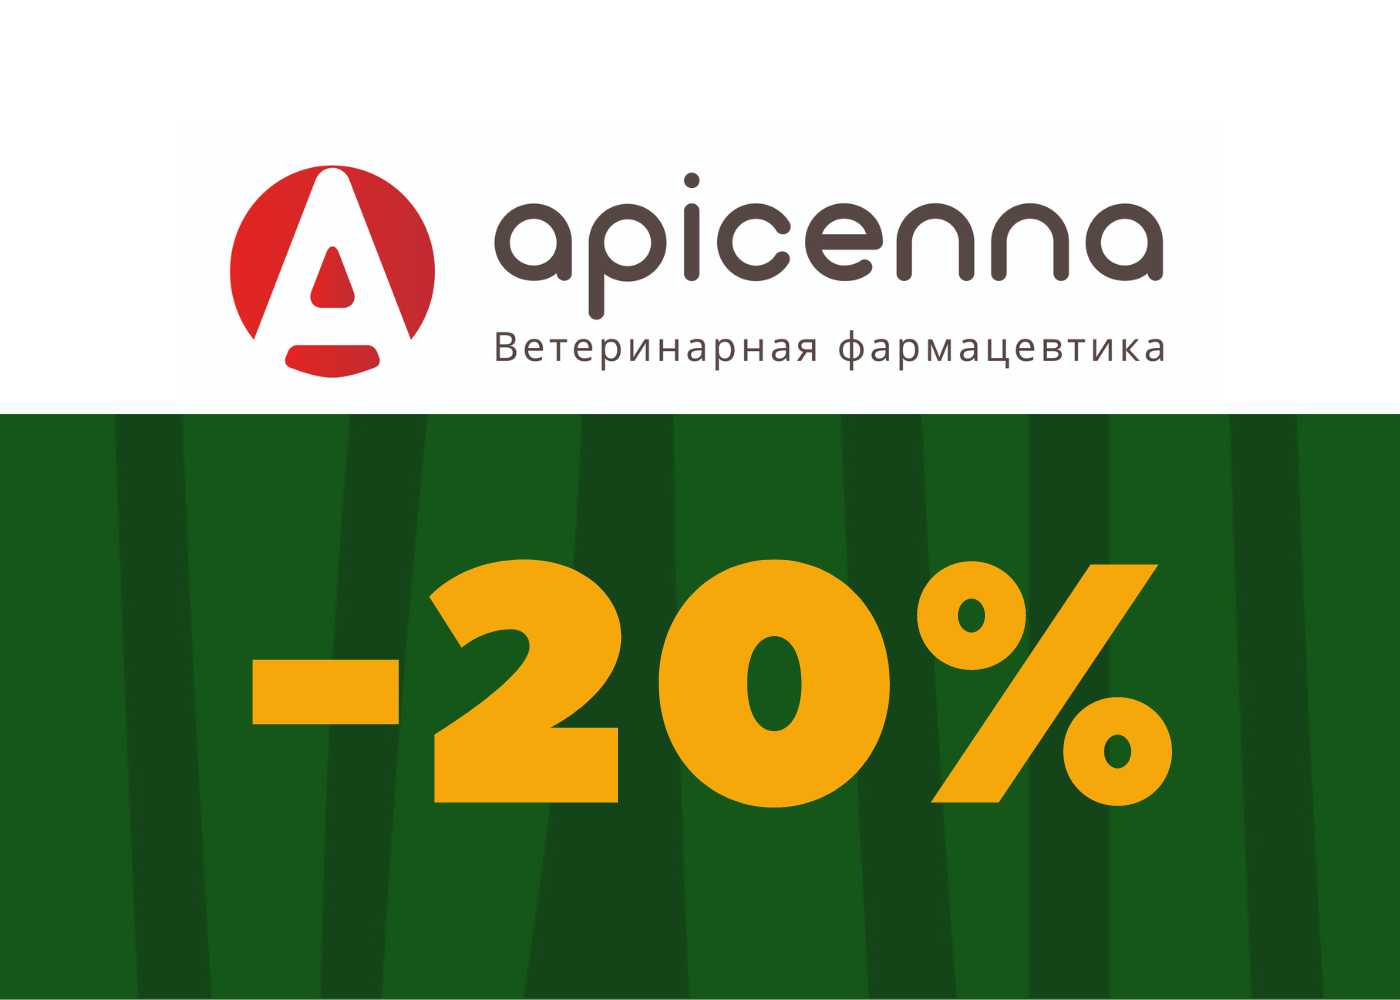 Скидка 20% на продукцию Apicenna